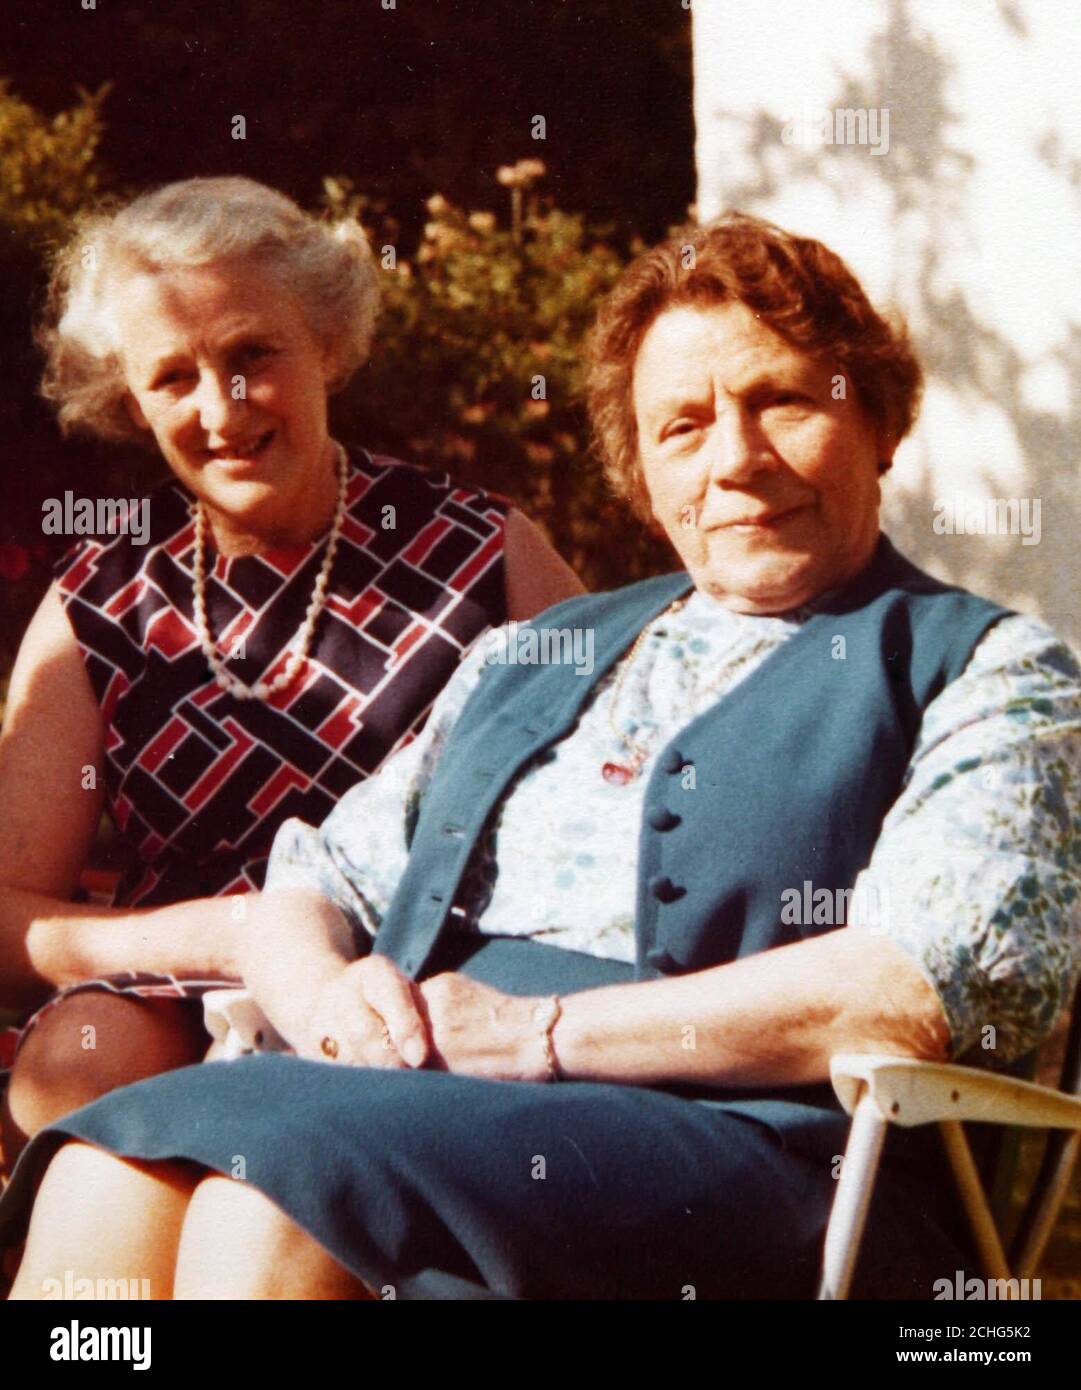 Sammeln Sie ein Foto vom 1970 von Frau Mary Brown, die heute ihren 110. Geburtstag mit einer Party im Eastlake Residential Home in Godalming, Surrey feierte - Bild zeigt Frau Brown im Alter von 73 Jahren mit einer Freundin. Stockfoto